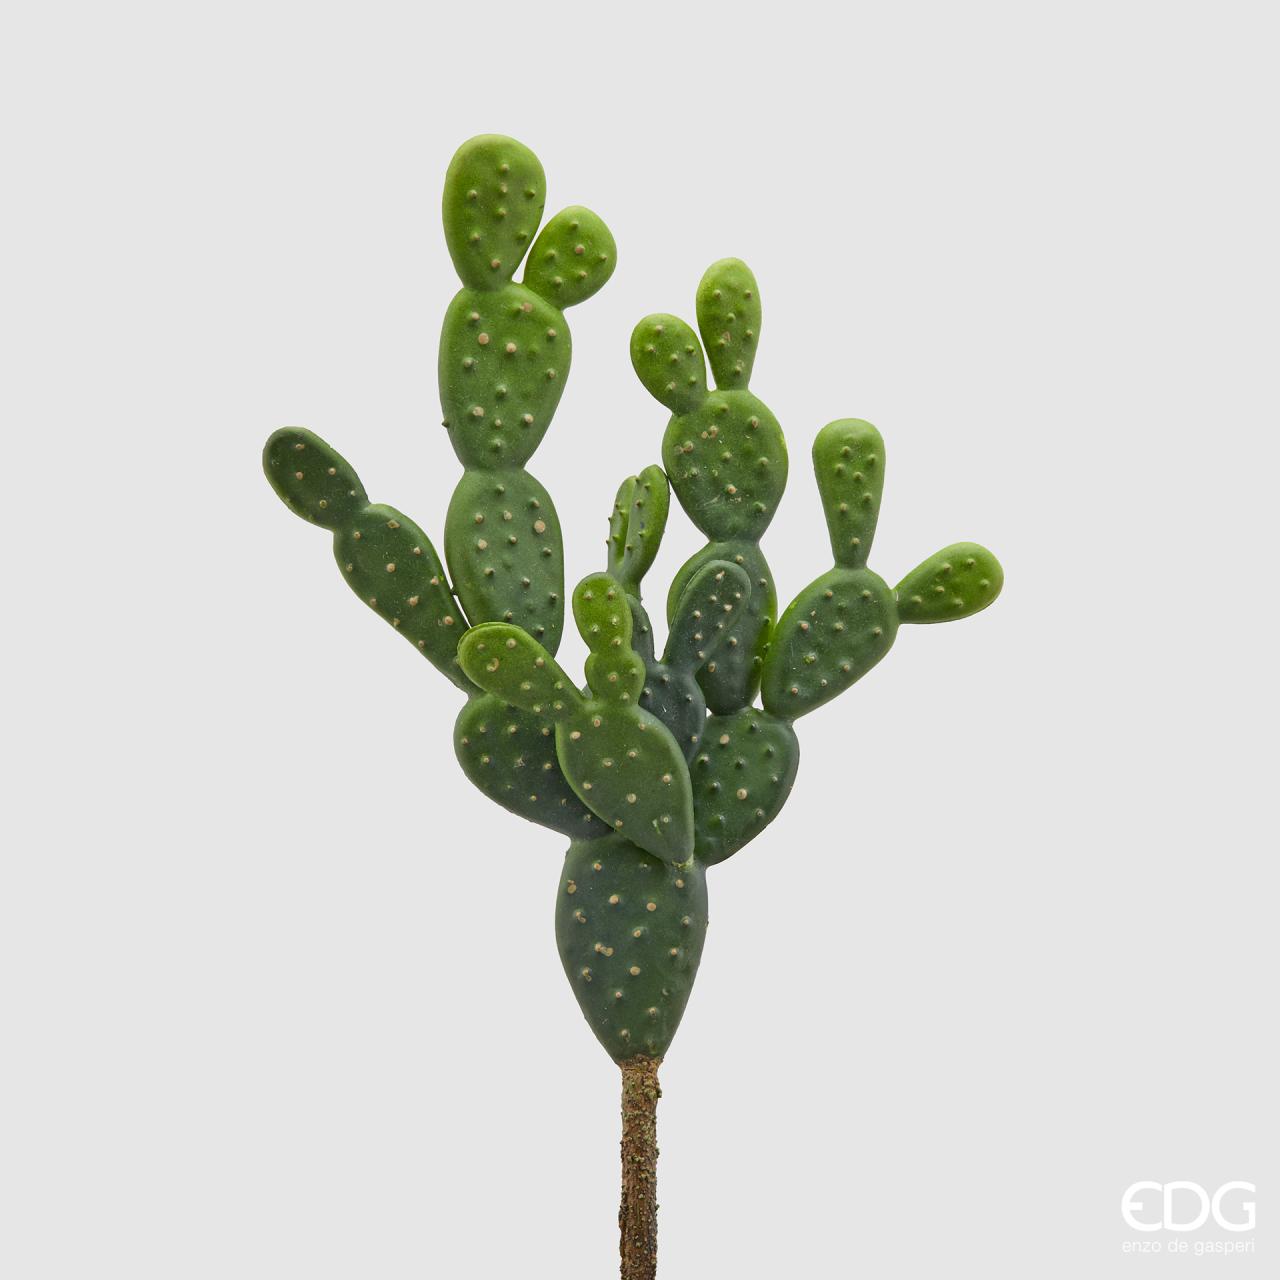 Piantina artificiale di Cactus in plastica decorata. Dimensioni: cm 10 x 30 h. In negozio e online su tuttochic.it